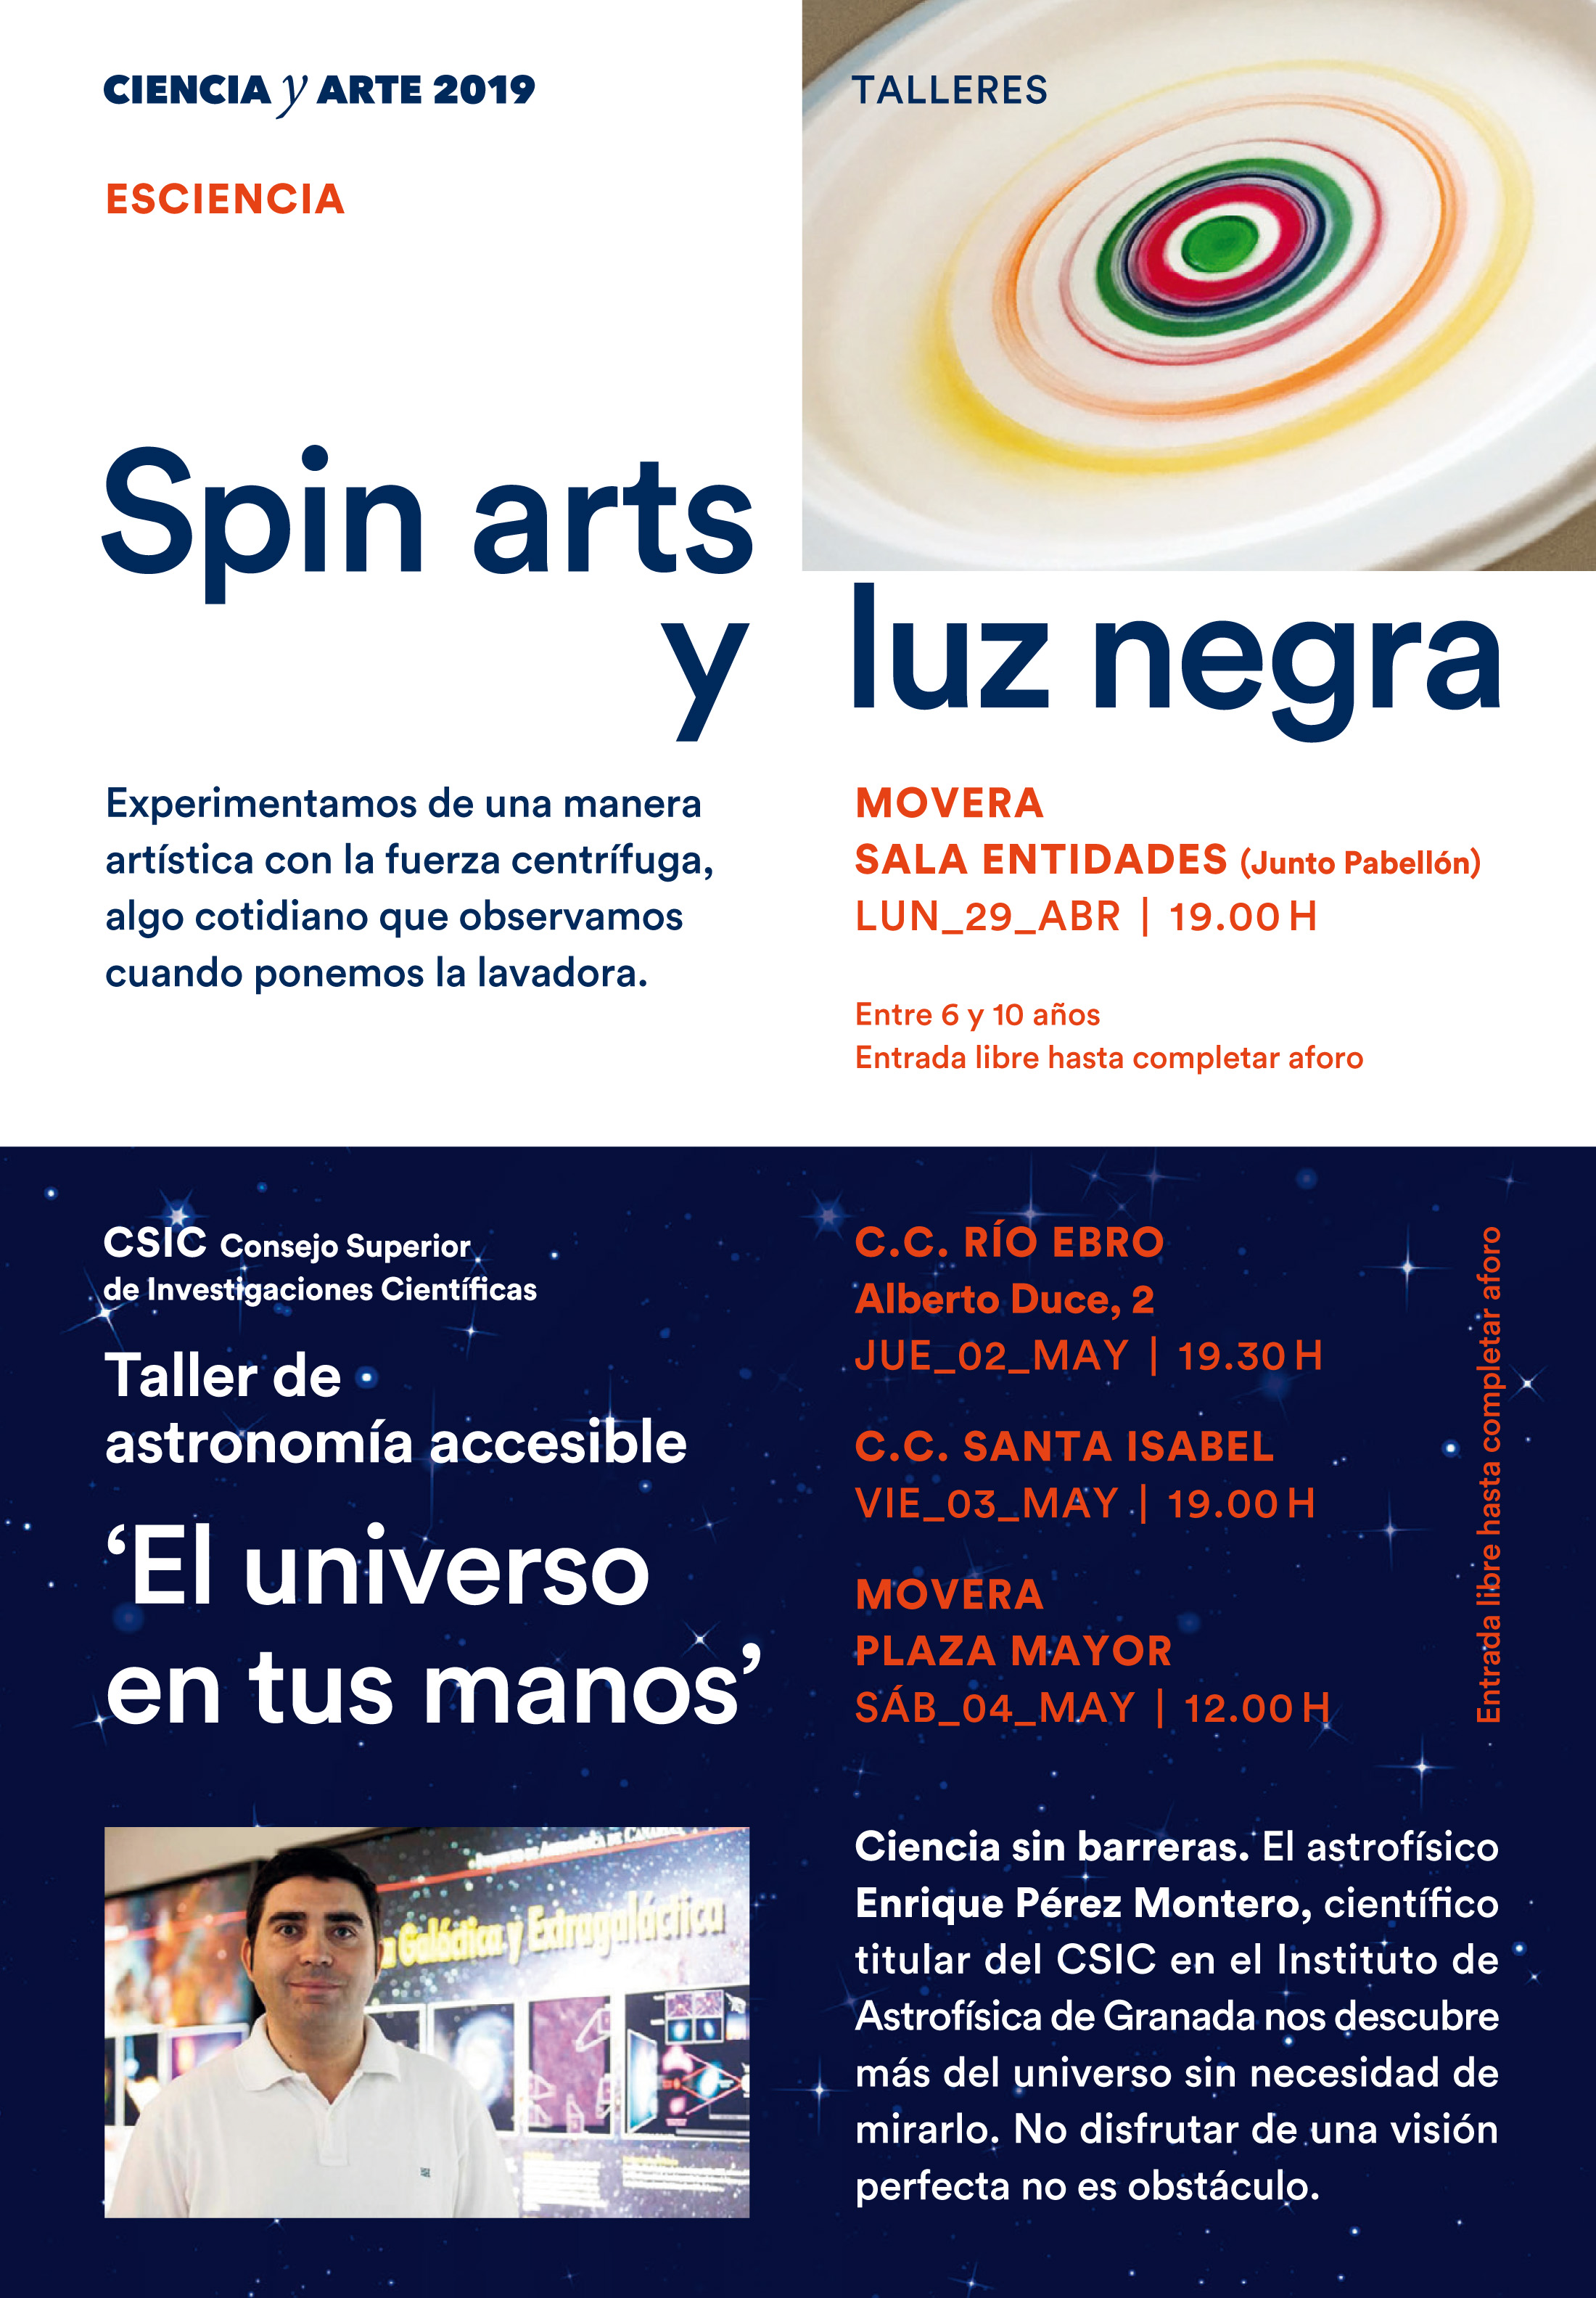 Ciencia y Arte 2019 en Zaragoza